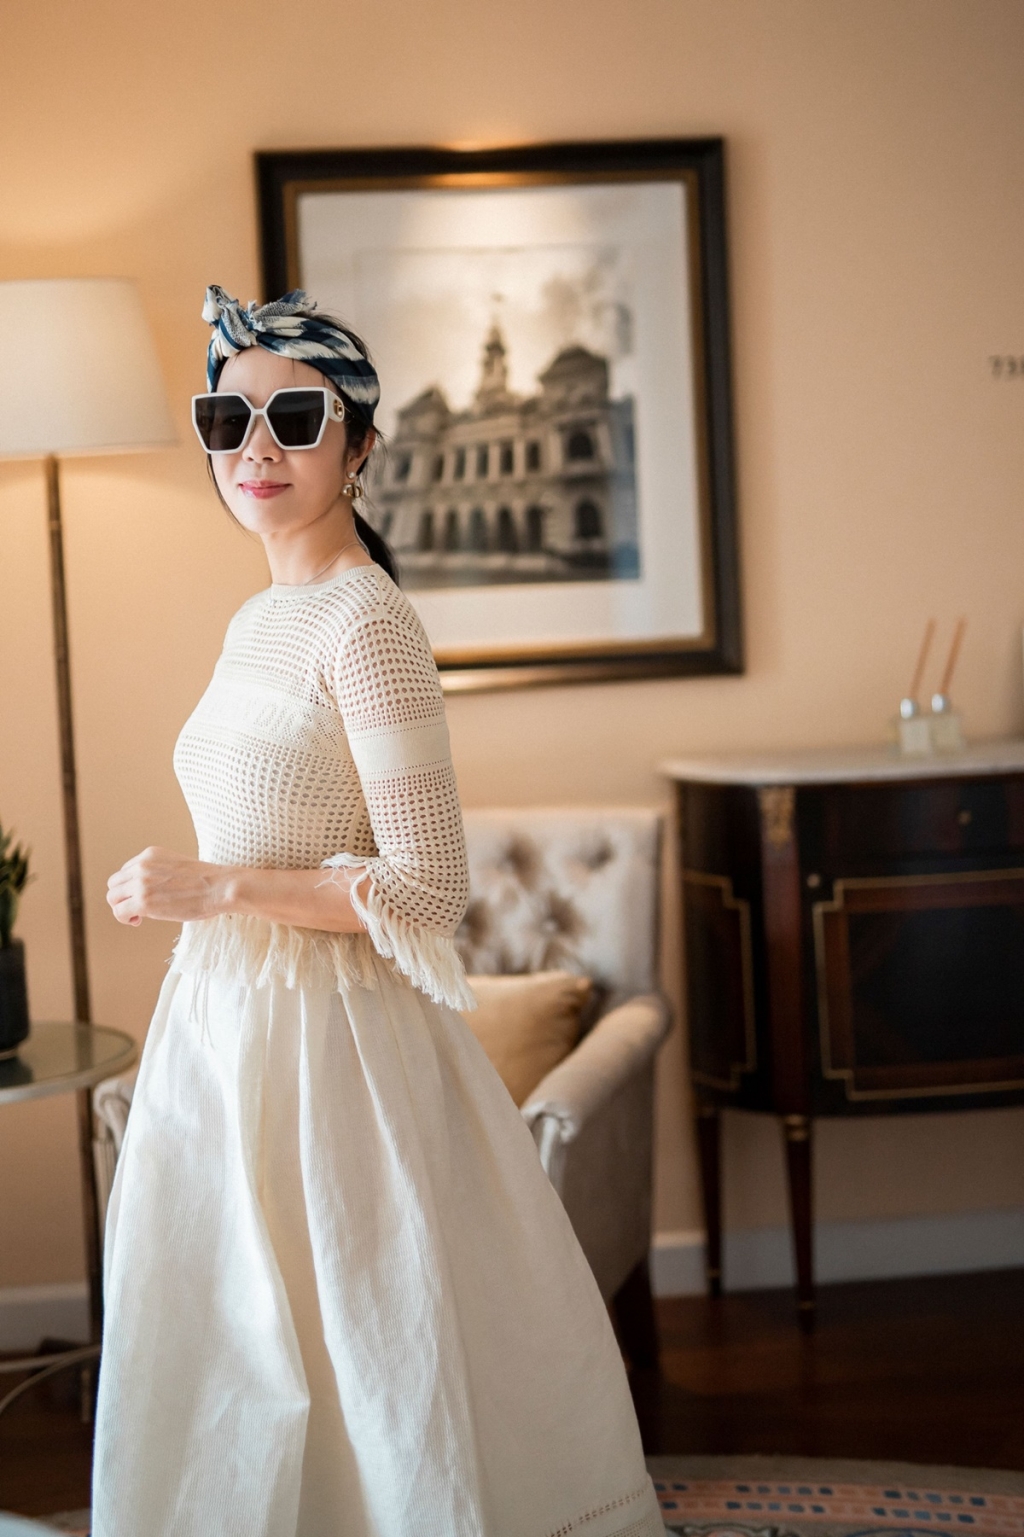 Lưu Nga - người ăn mặc sành điệu nhất giới doanh nhân Việt